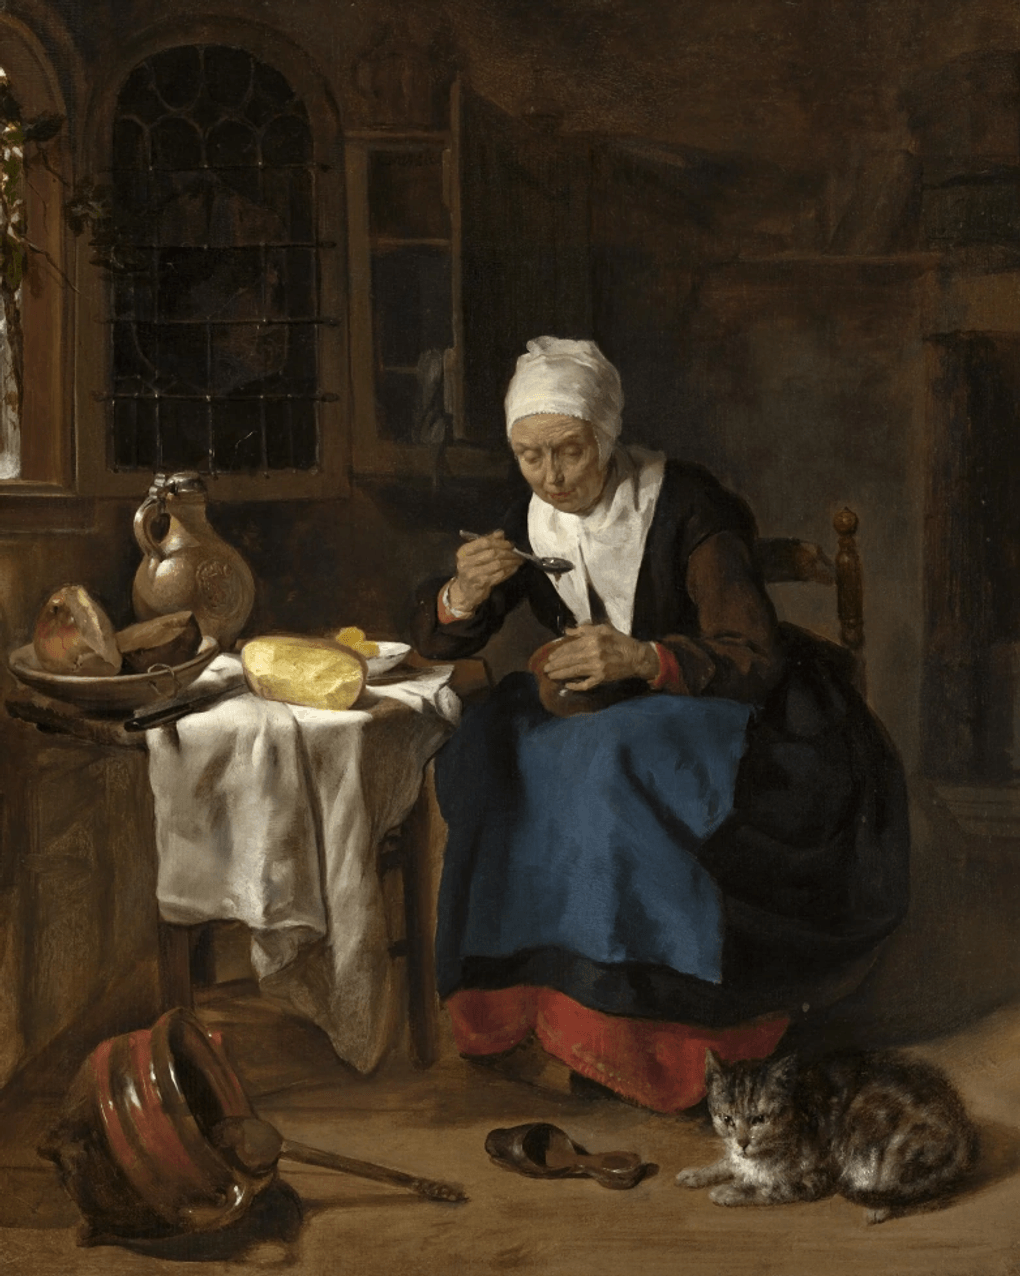 Габриель Метсю. Пожилая женщина ест кашу. 1657. Частное собрание, Нидерланды